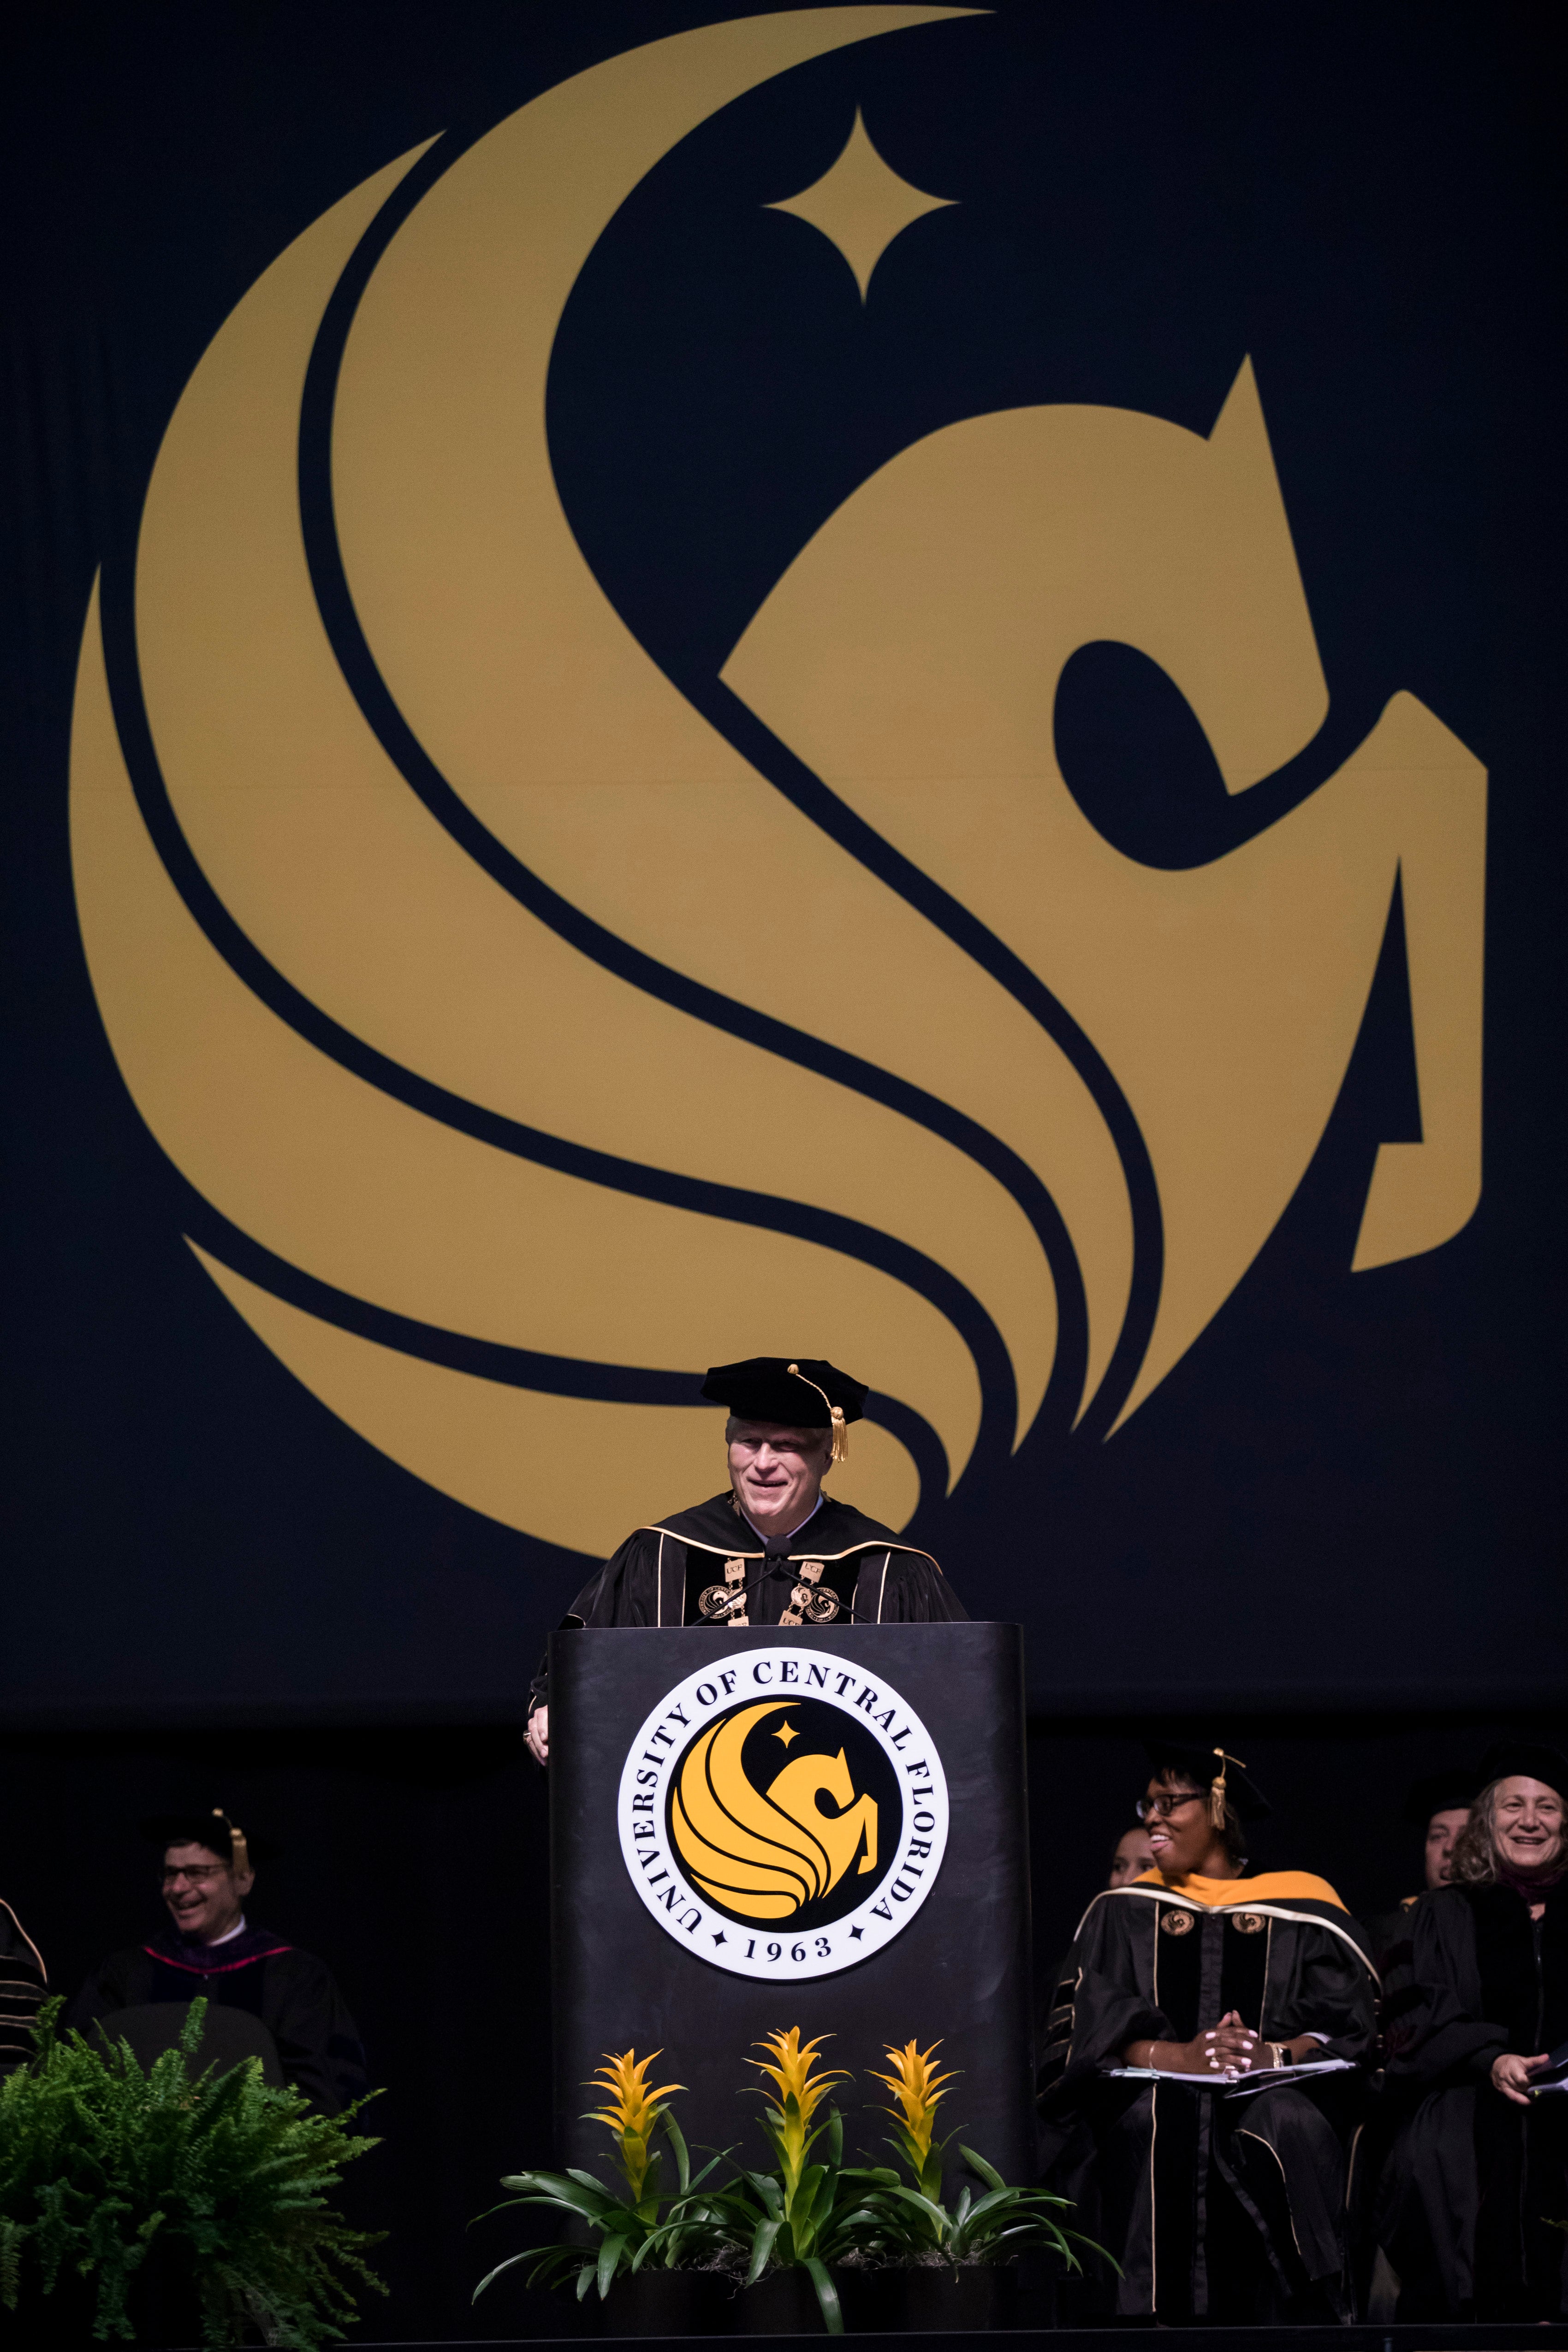 John C. Hitt speaks at a podium while wearing regalia as a yellow Pegasus symbol hangs behind him.